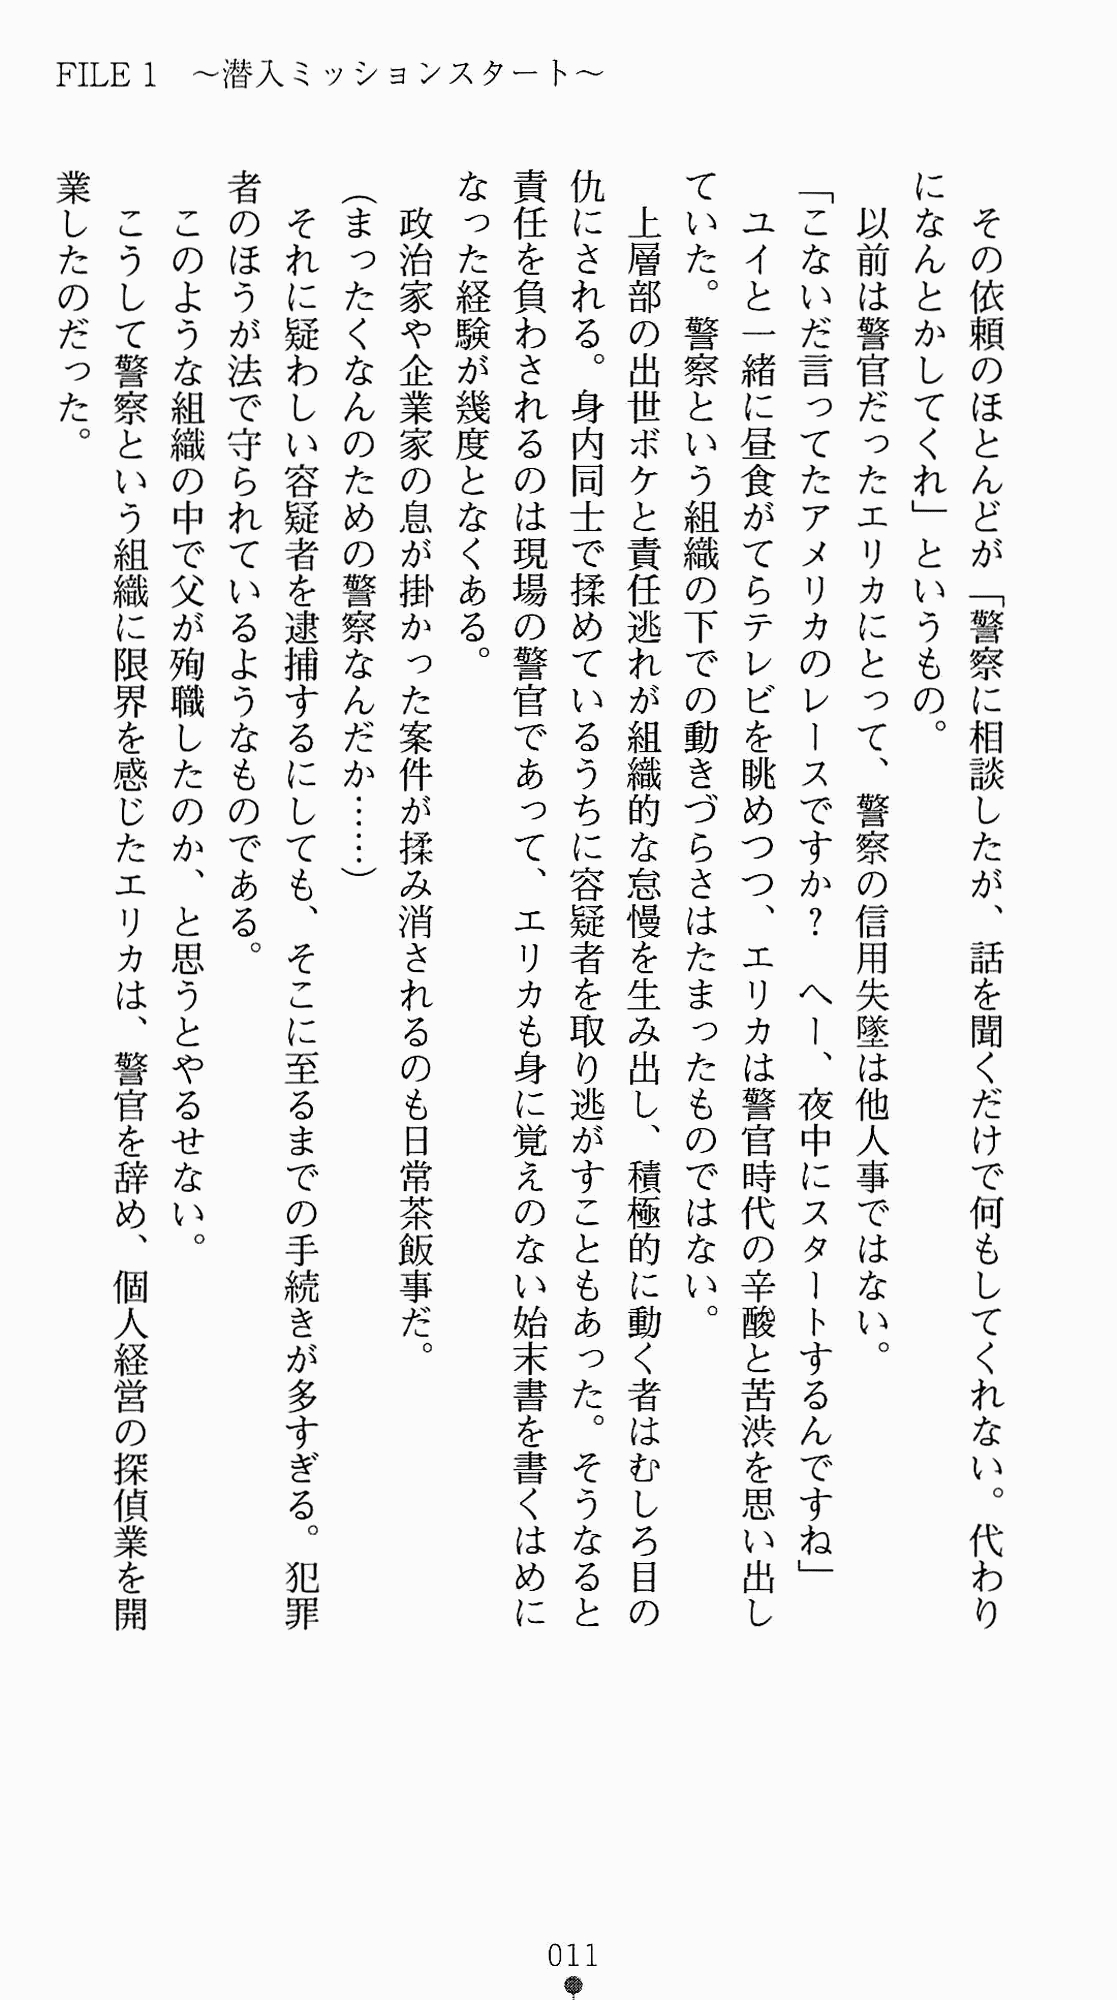 [Kagura Youko, Takahama Tarou] Shiritsu Tantei Takasuga Erika no Jikenbo 2 - Chijouha AV Satsuei 24-ji 26